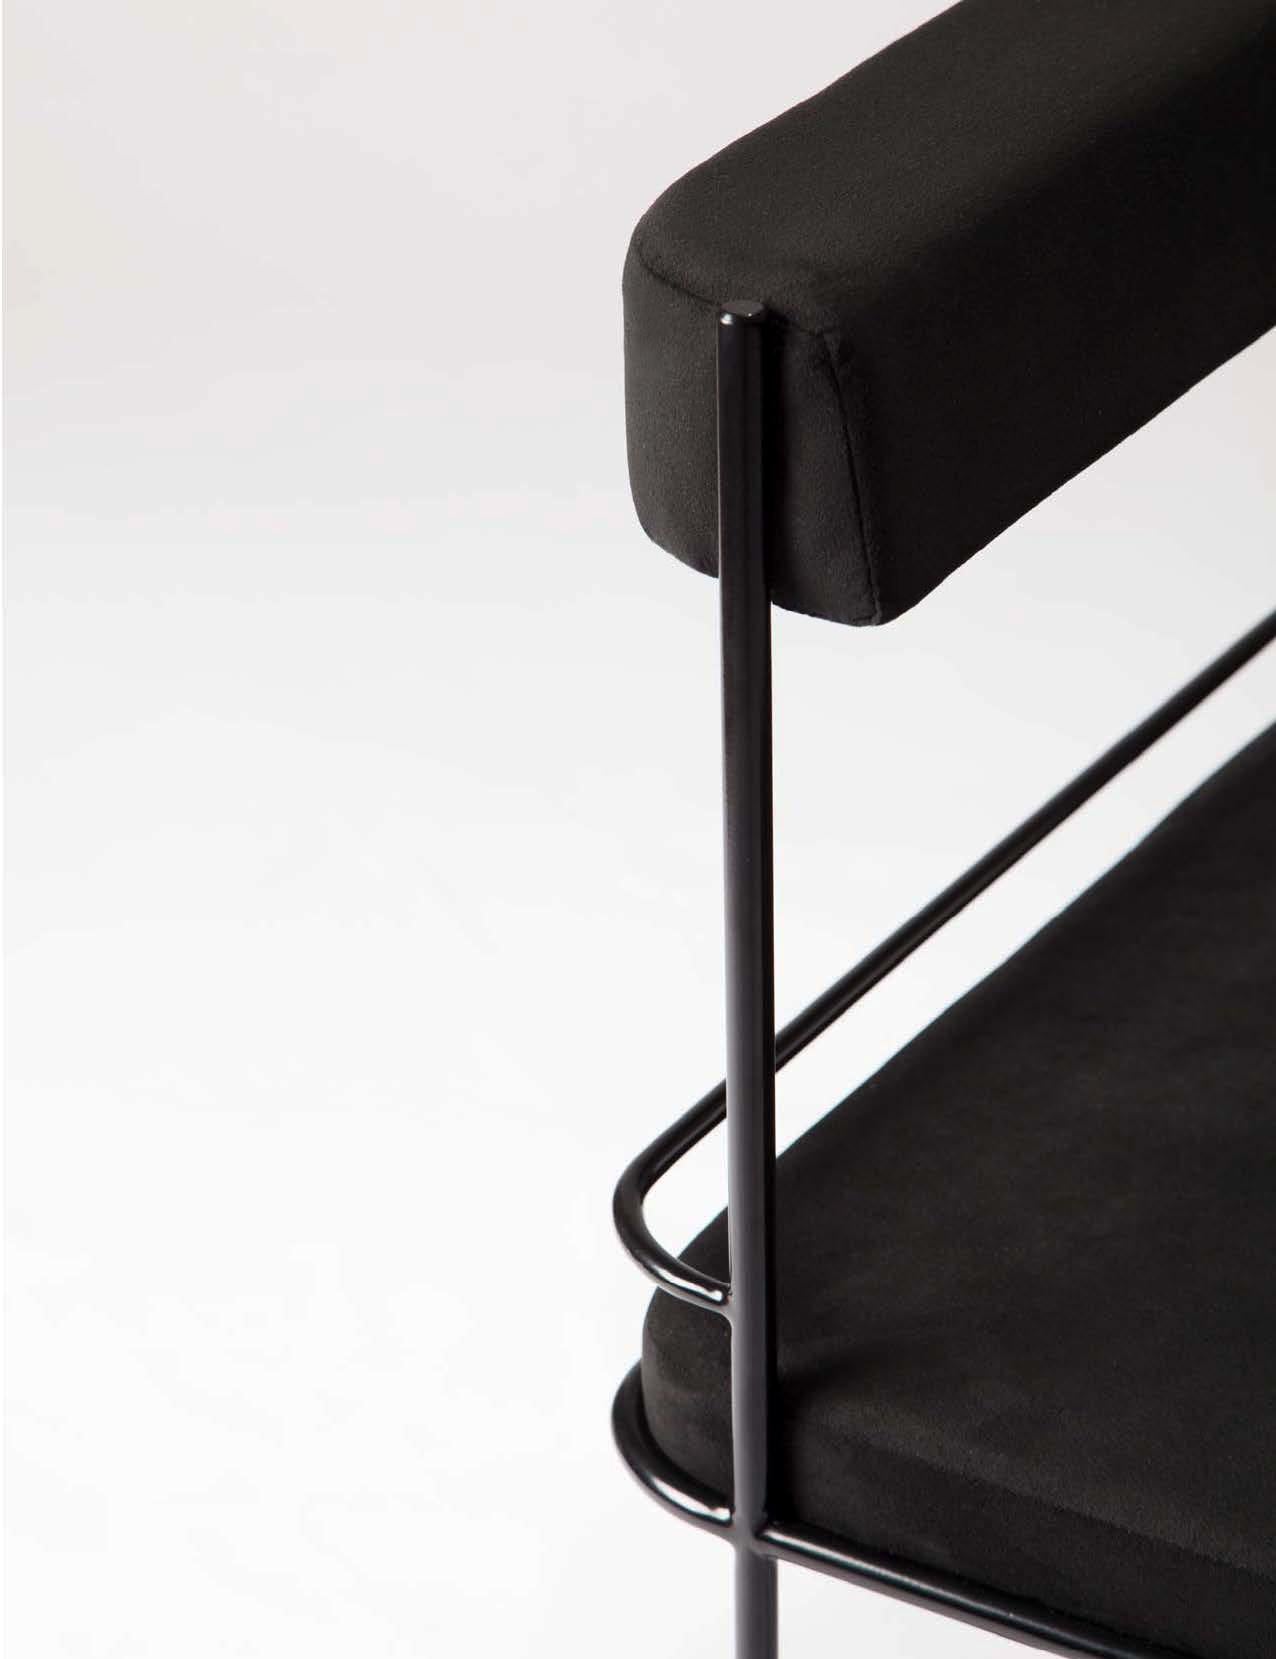 Das Frame Side Lounge Set (bestehend aus einem Beistellstuhl und einem Beistelltisch) basiert auf der Sensibilität von Schwarz. Einfach, aber mit visueller Wirkung, komfortabel im Tastsinn, hat es die Subtilität und Nuance von schwarzen Materialien